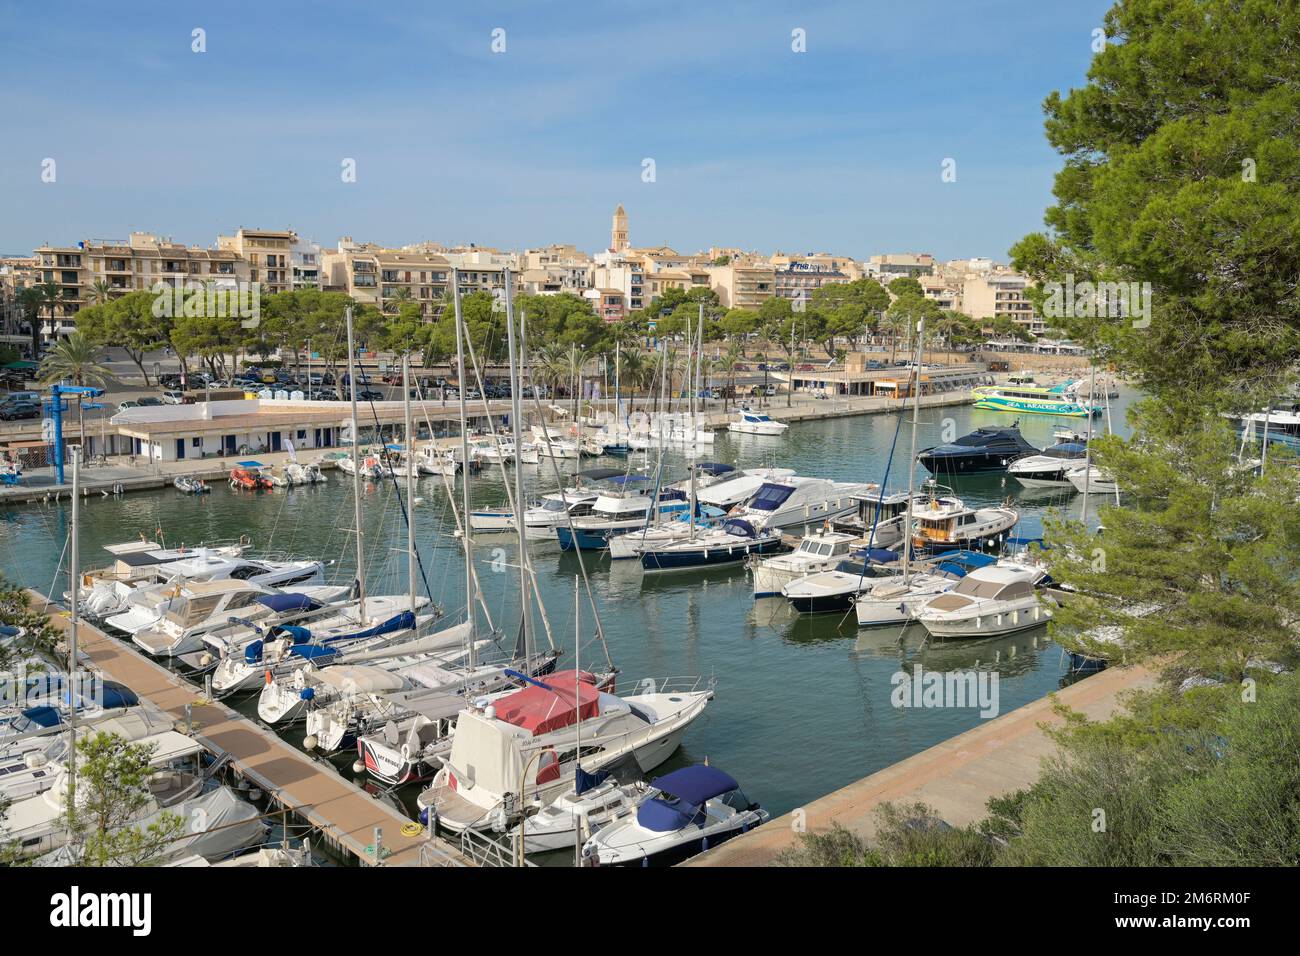 Yachthafen, Porto Cristo, Mallorca, Spanien Foto Stock